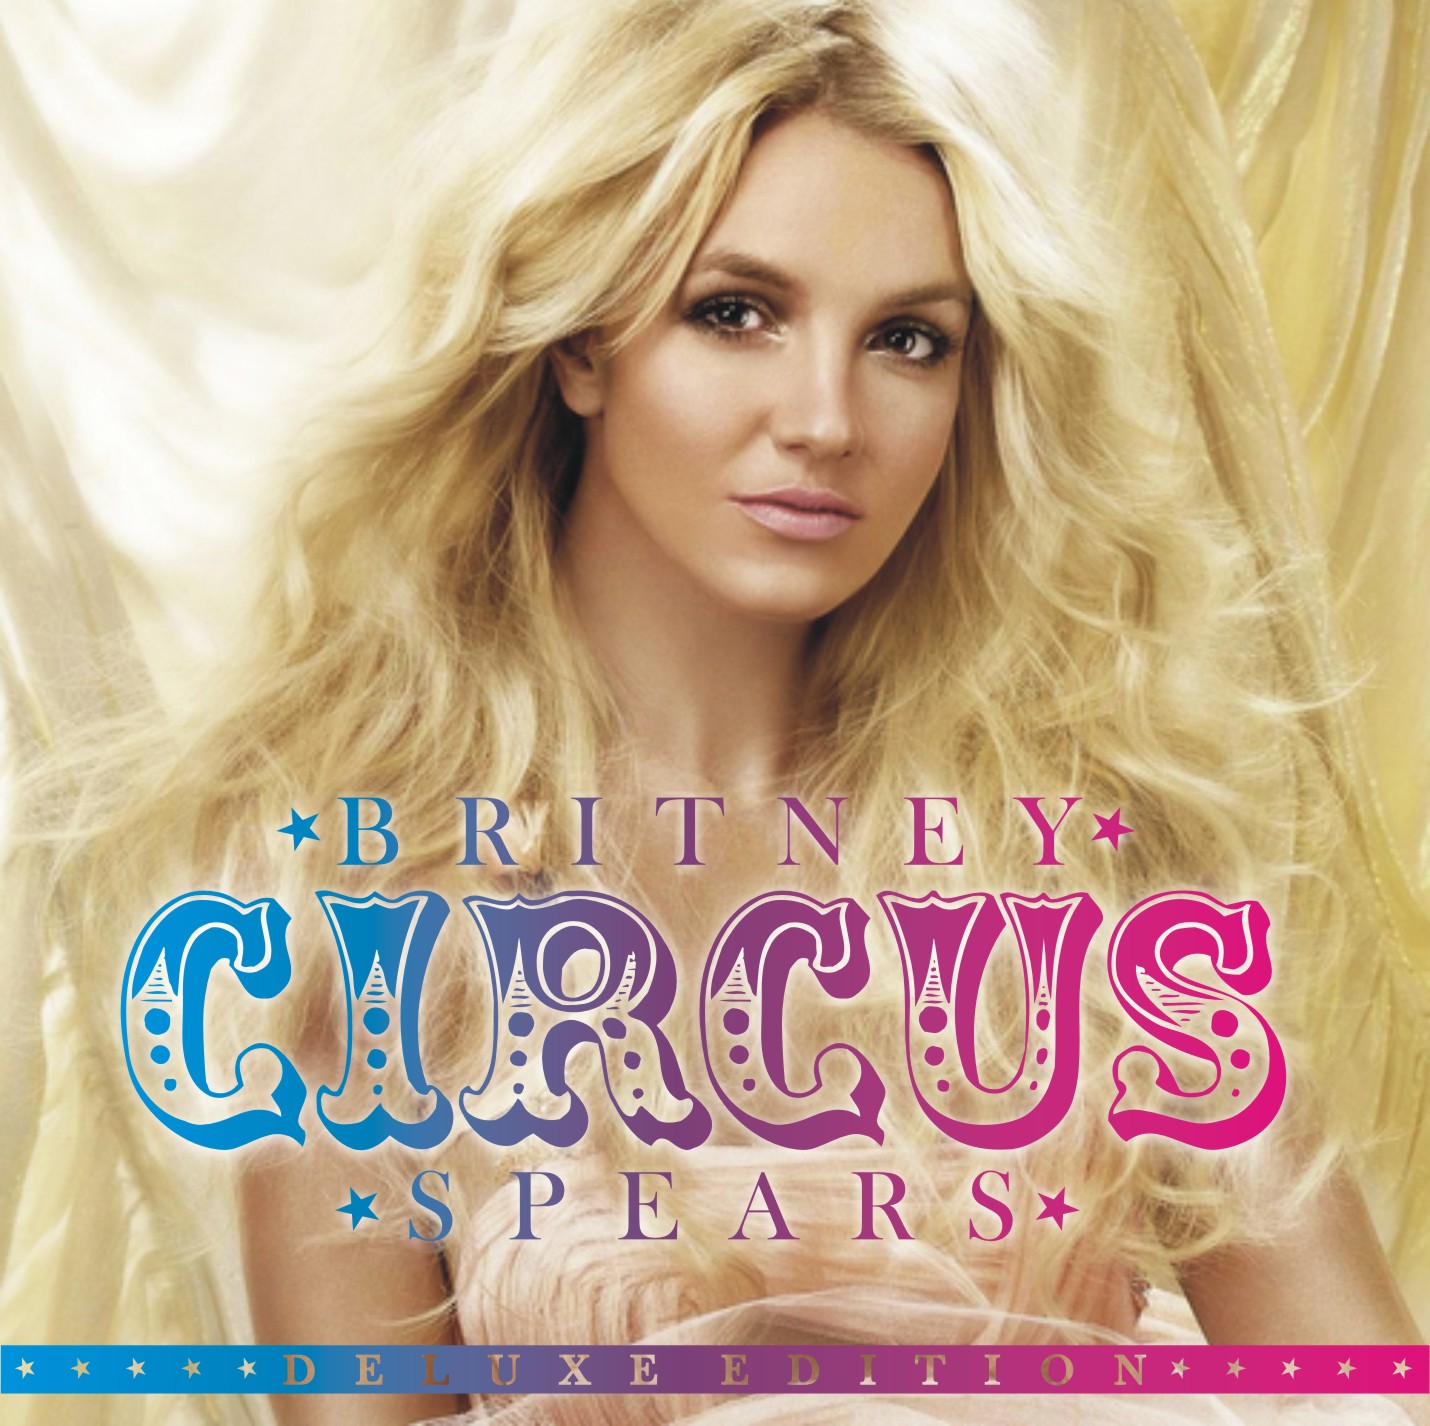 http://1.bp.blogspot.com/-ucz_1cTjUWs/TlzevSnig6I/AAAAAAAACHQ/V8QuNCuqRok/s1600/Britney+Spears+Circus+Album+2.jpg